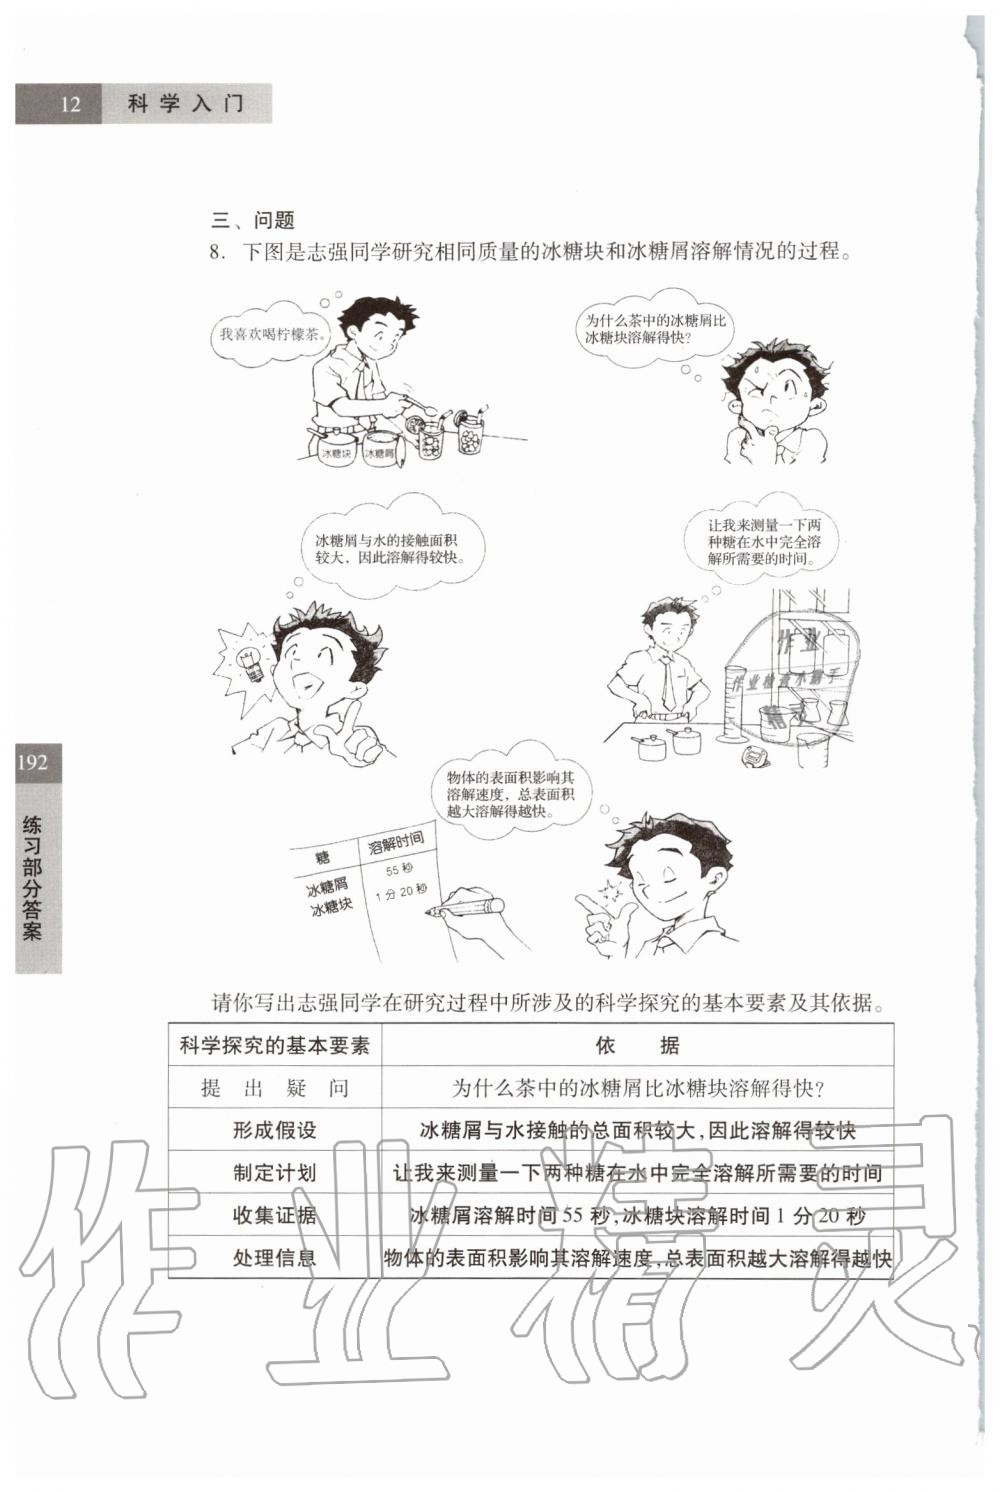 2019年科学练习部分六年级第一学期牛津上海版 第12页